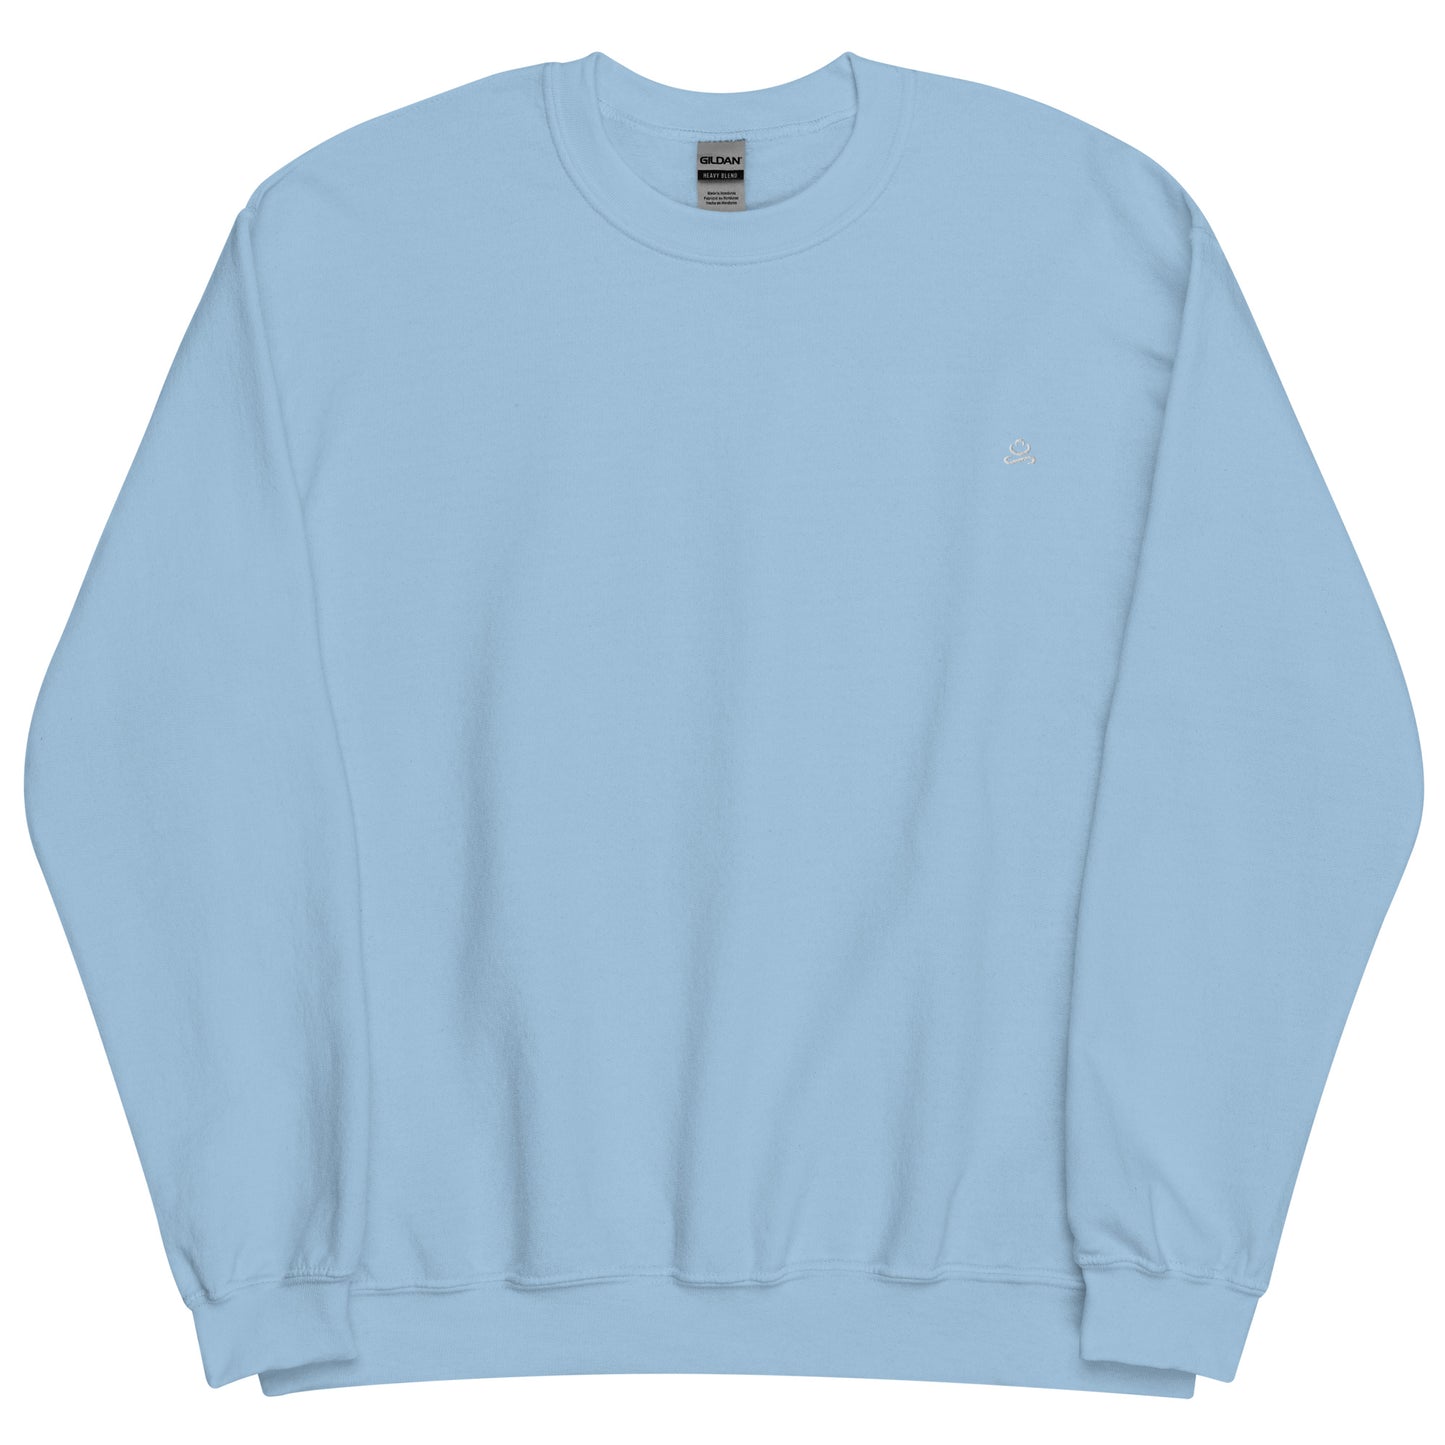 Light Blue Women's Cotton Sweatshirt by Women's Cotton Sweatshirt sold by Jain Yoga